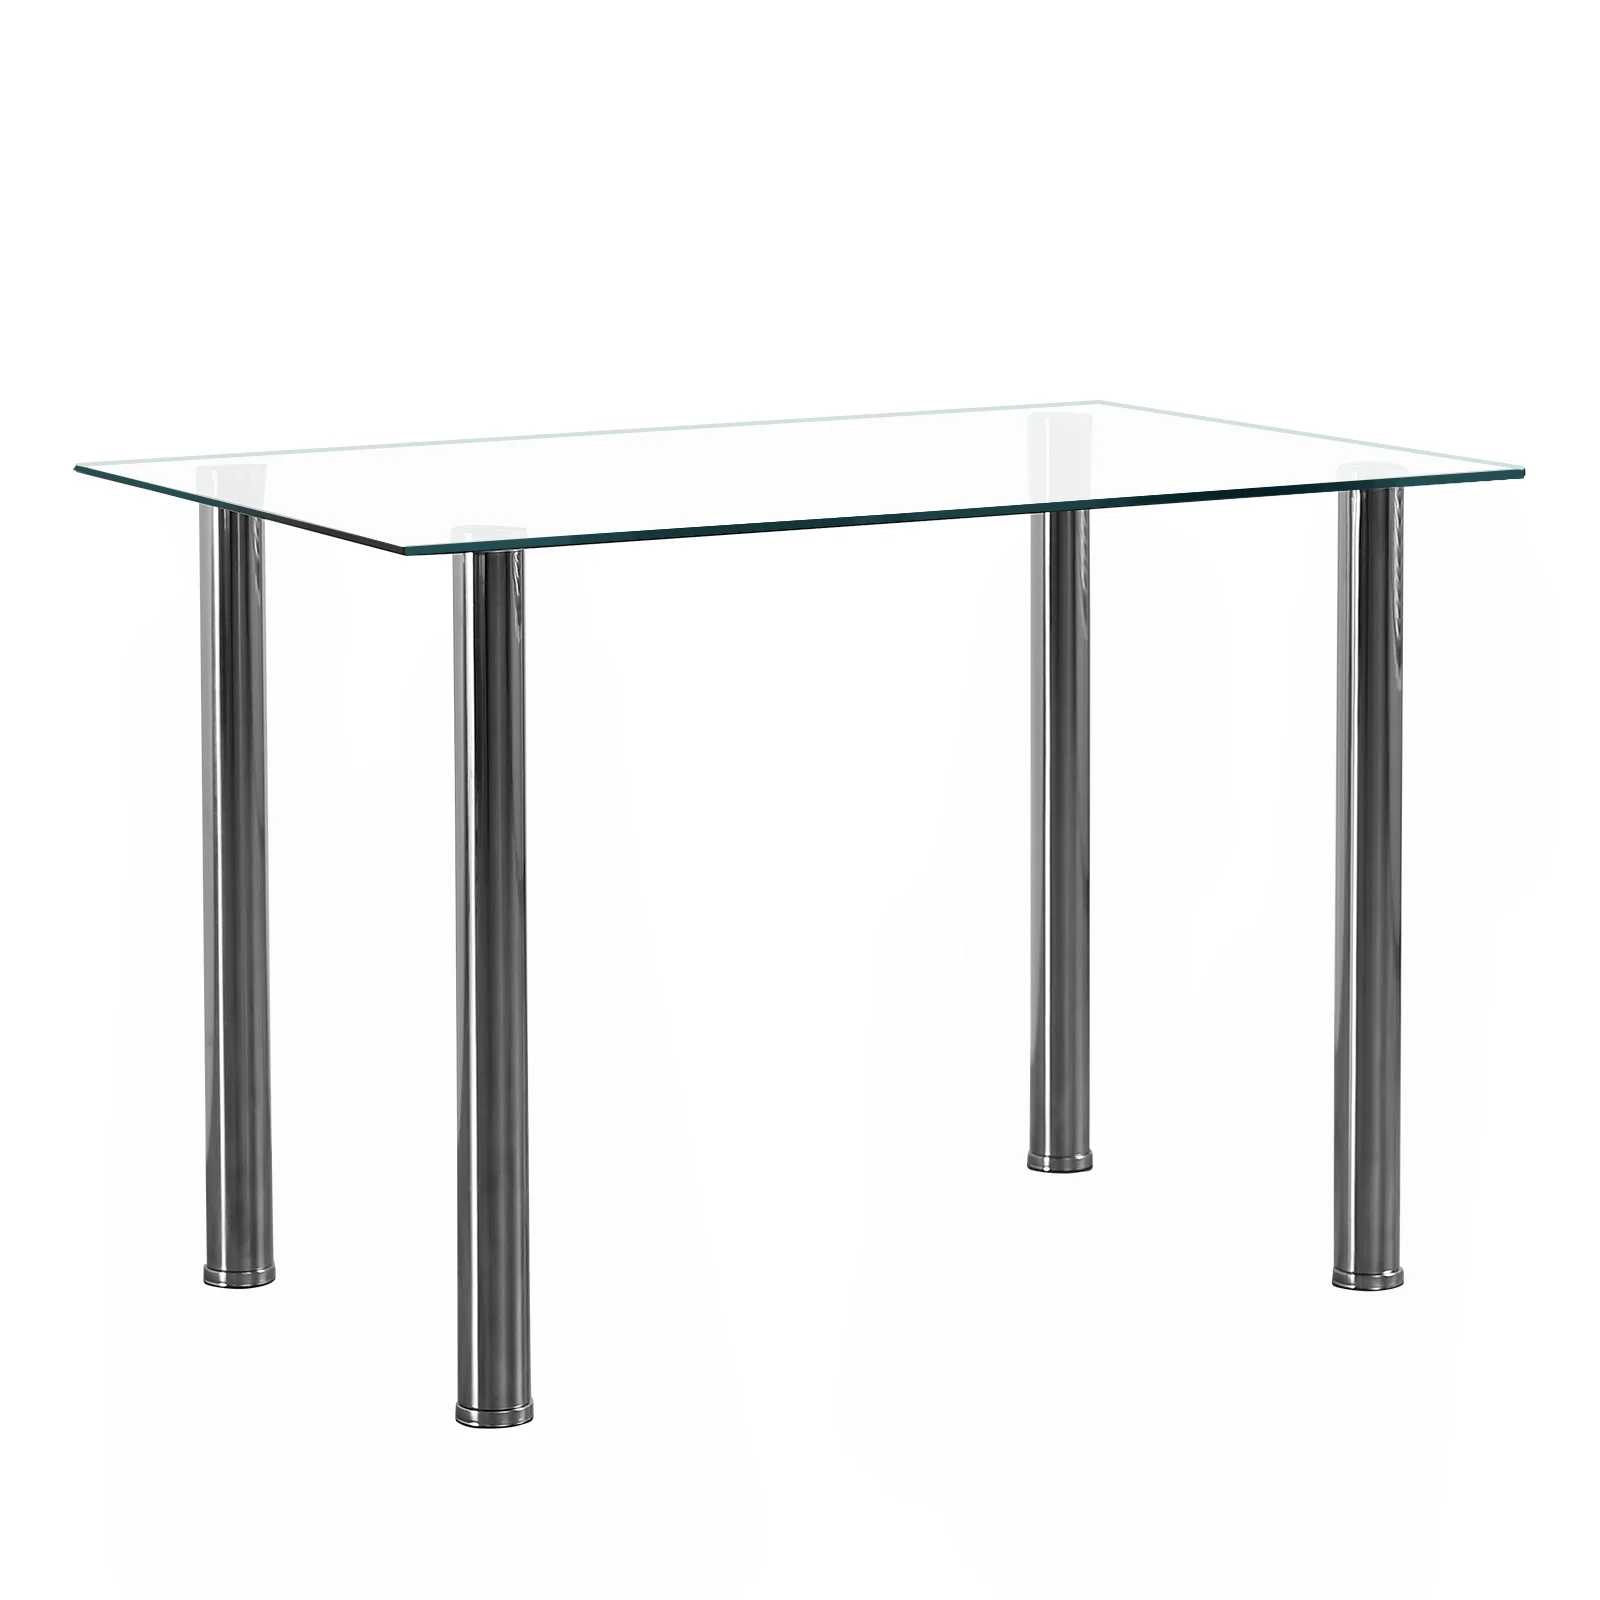 4-מושב שולחן אוכל מלבני פשוט גלילי הרגל שולחן מחוסמת זכוכית, נירוסטה, זכוכית שקופה 110 * 70 * 75 סנטימטר - 4